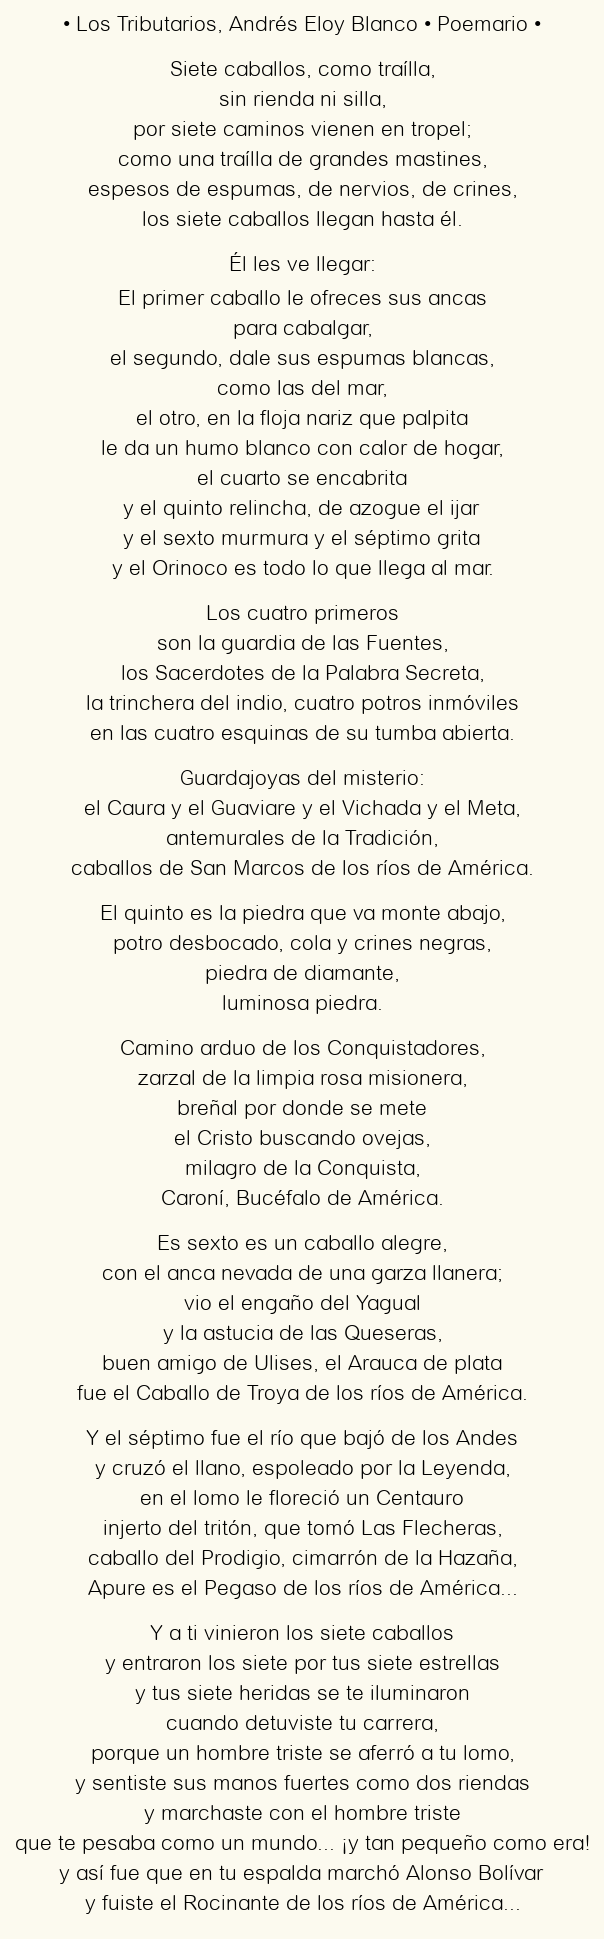 Imagen con el poema Los Tributarios, por Andrés Eloy Blanco